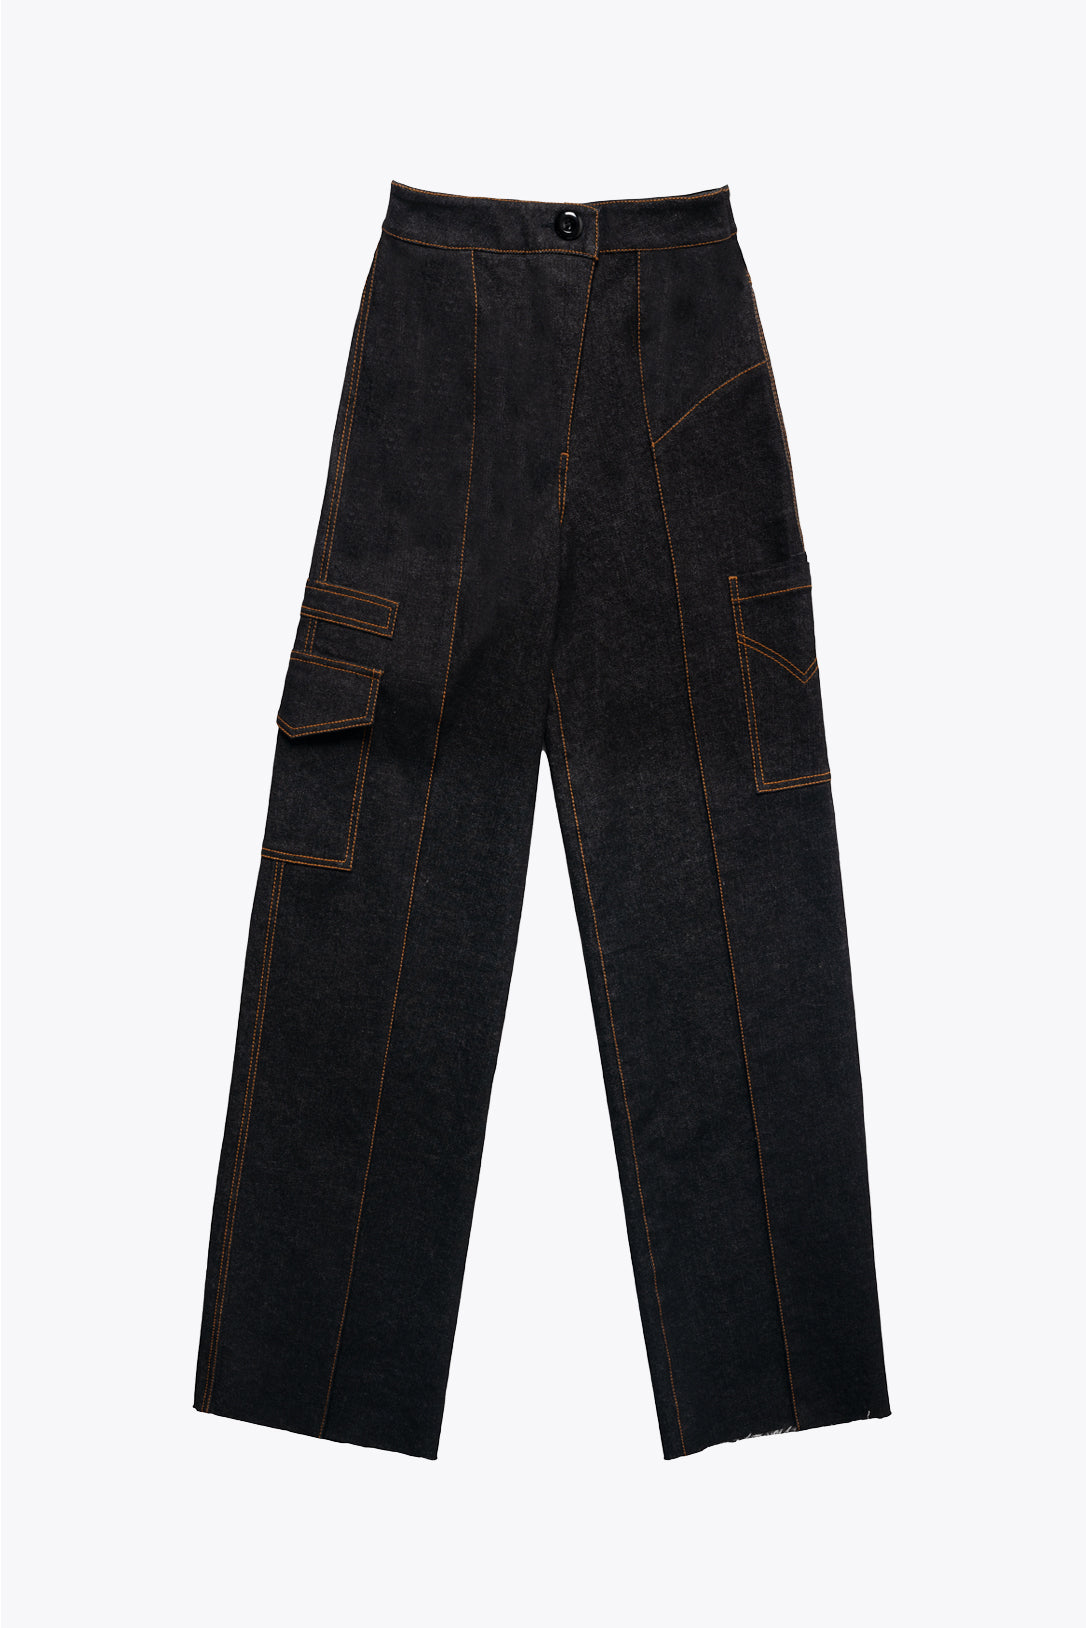 Amiri Aged Black Denim Distressed Art Patch Jeans XS Amiri | TLC